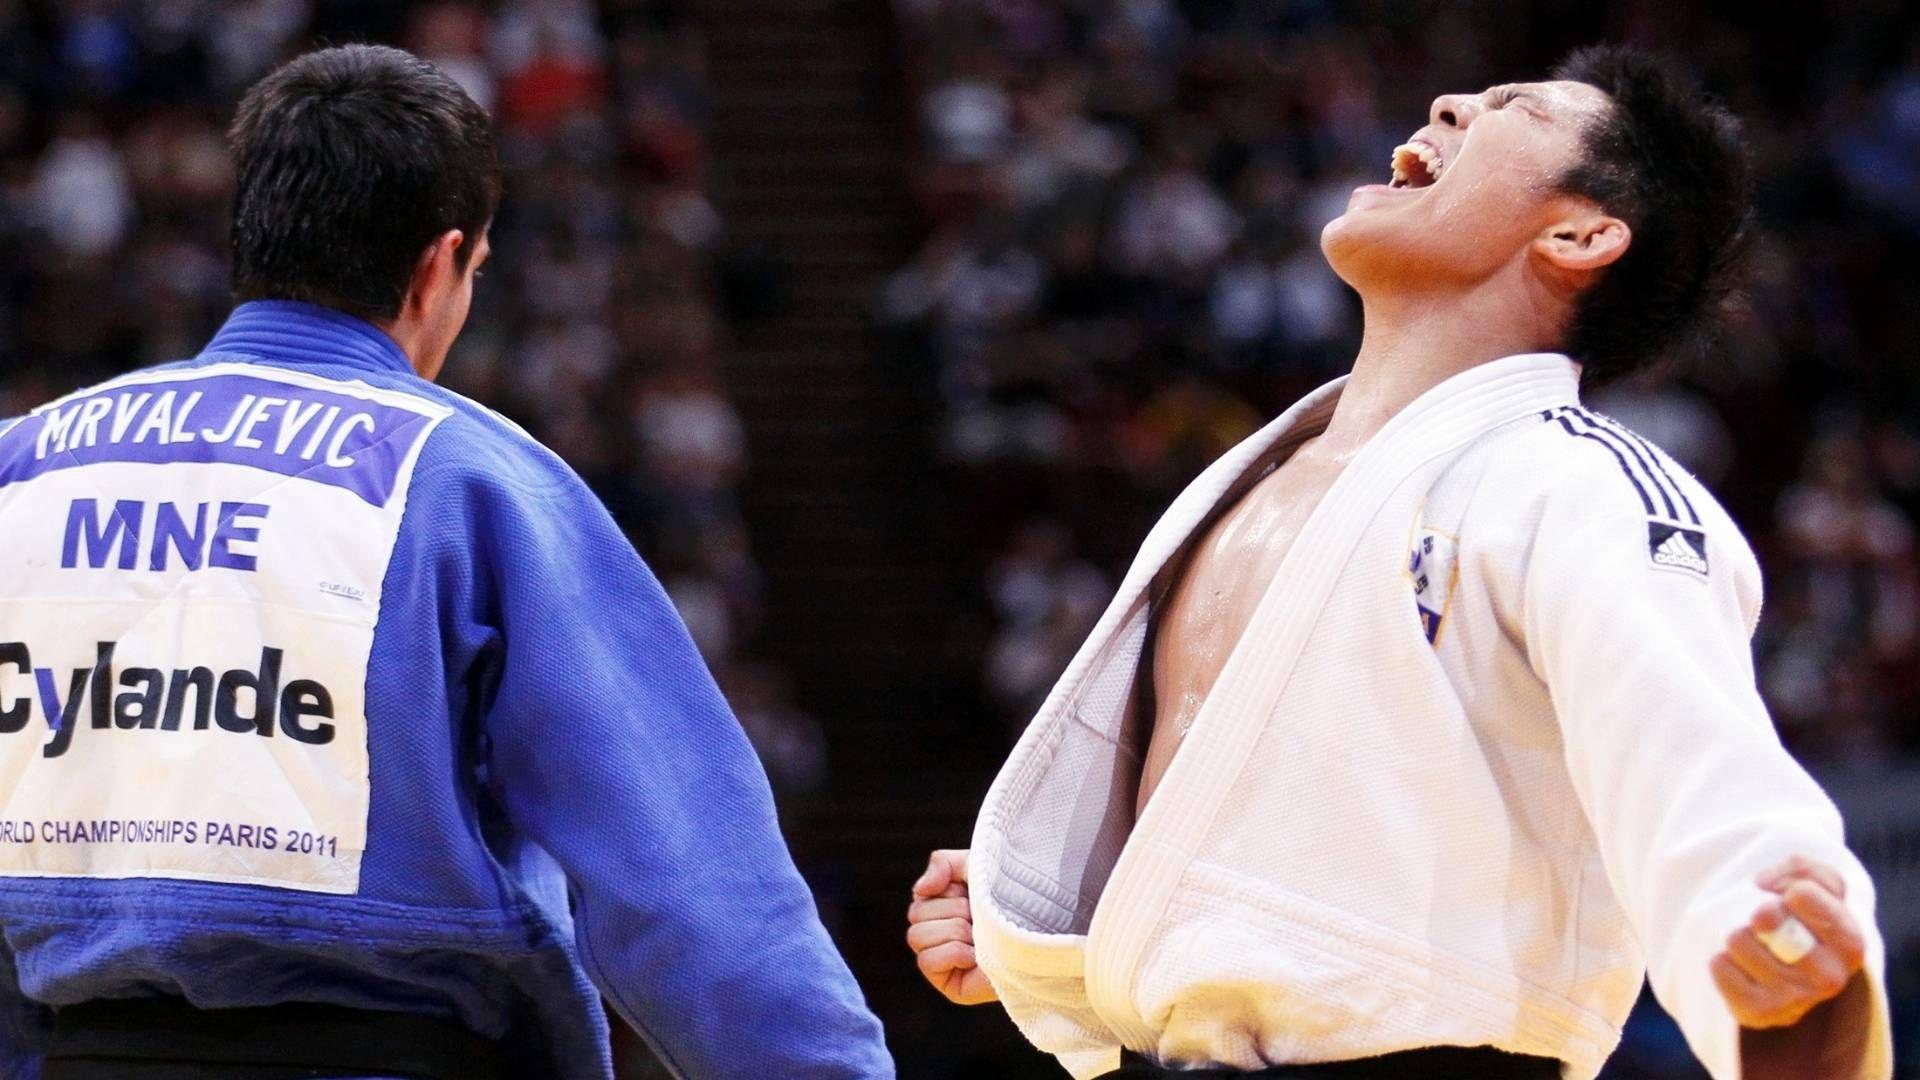 Judo Wallpaper